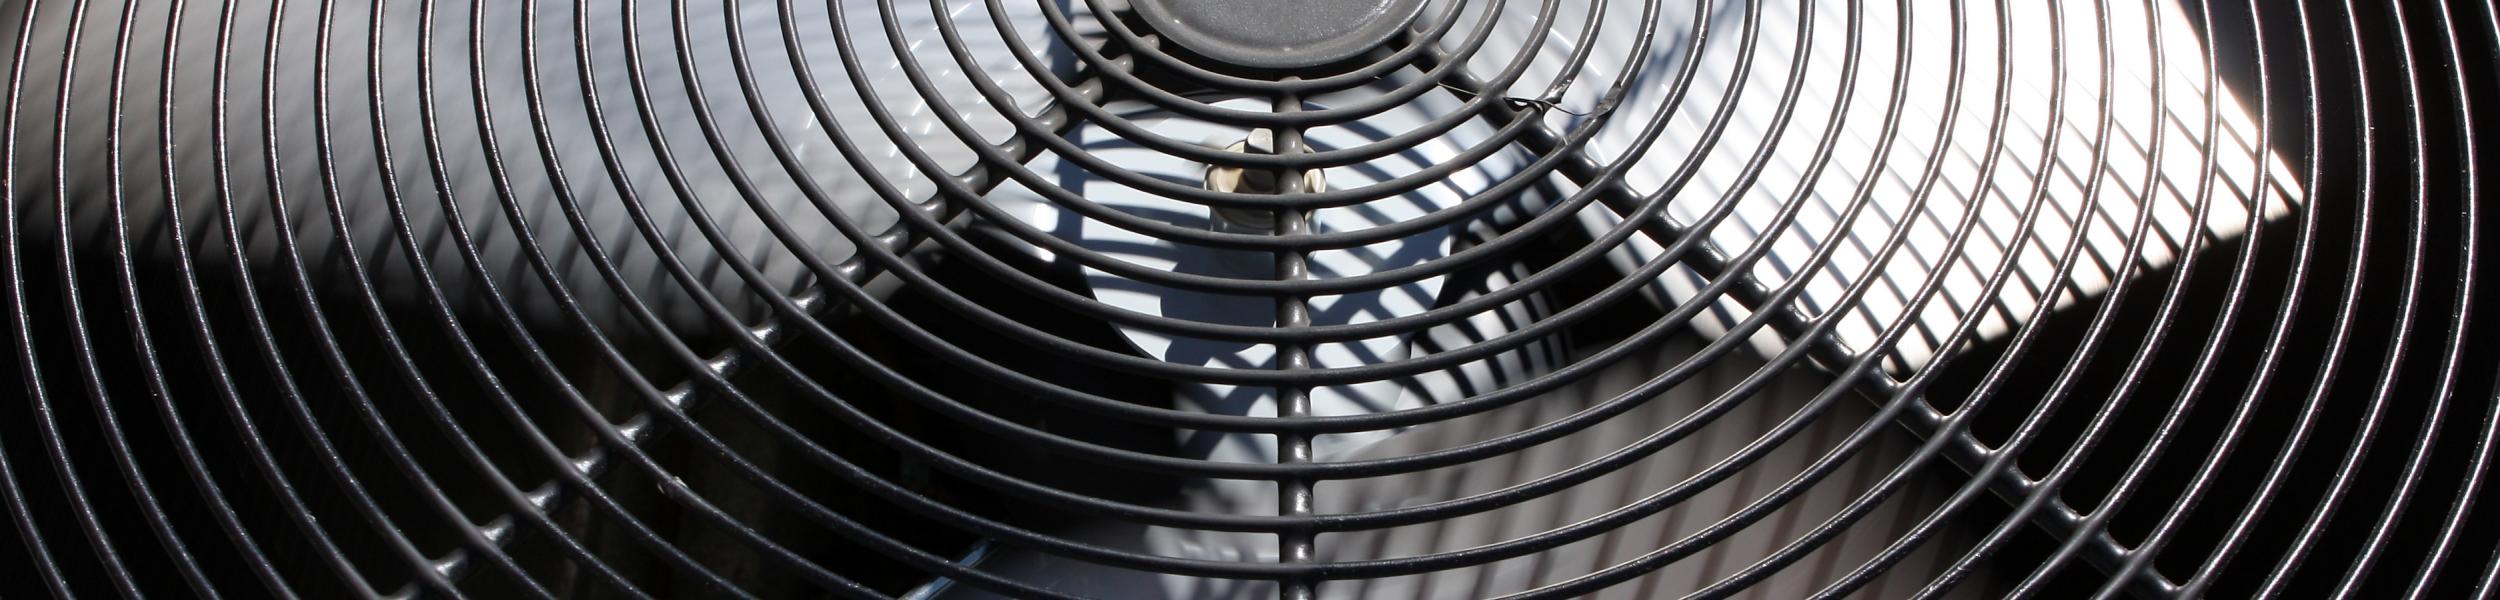 image of an AC unit fan